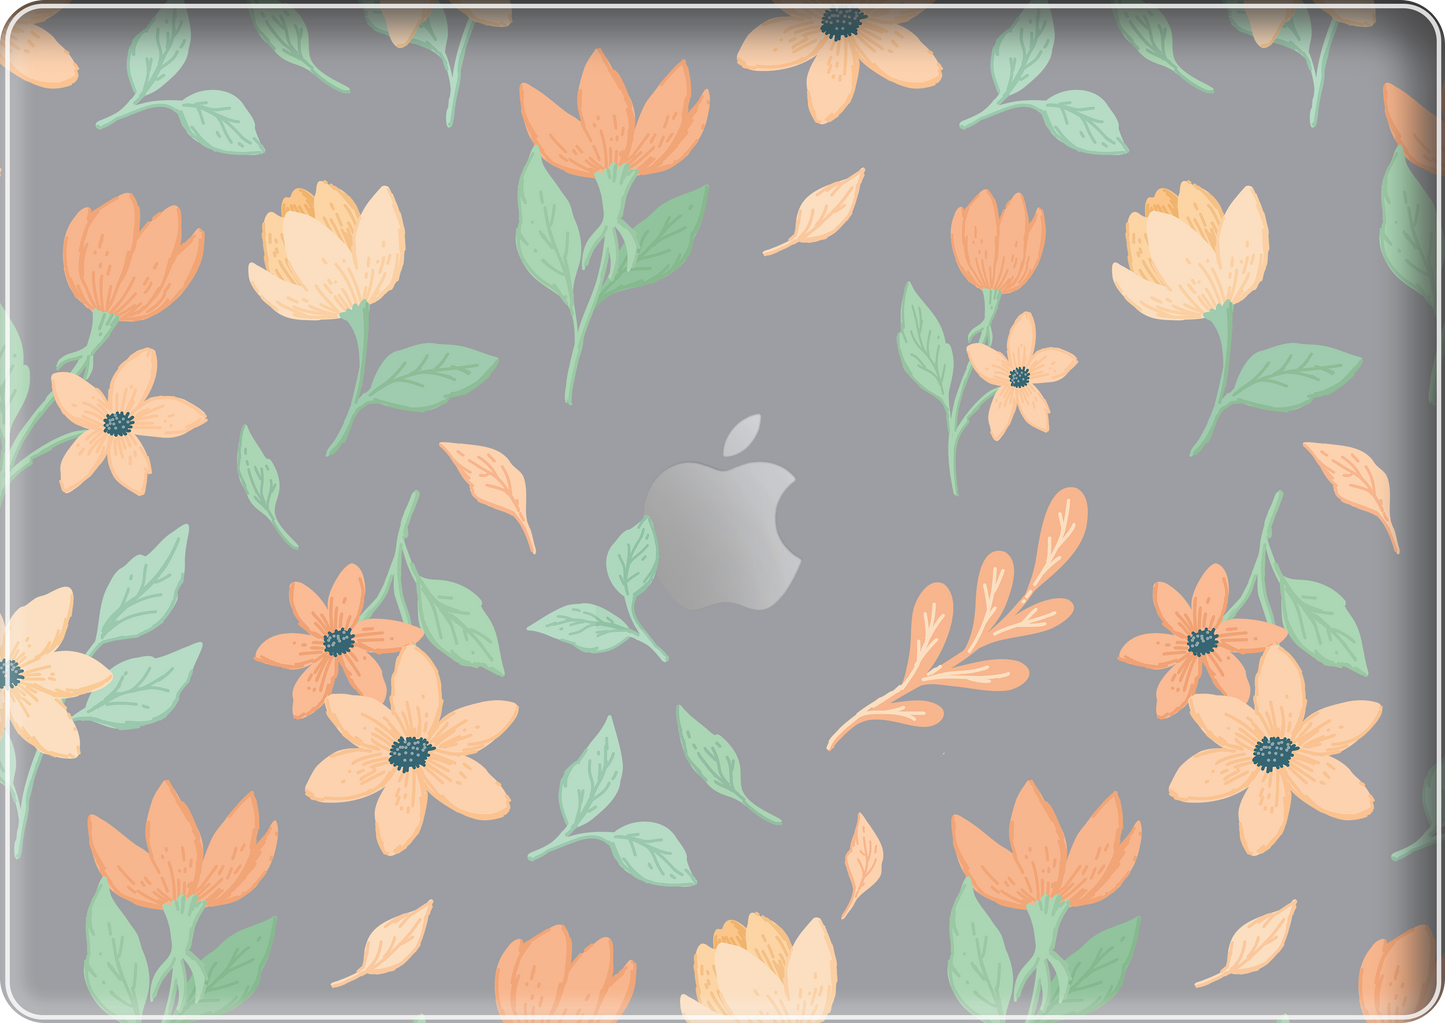 MacBook Snap Case - Birth Flower 4.0